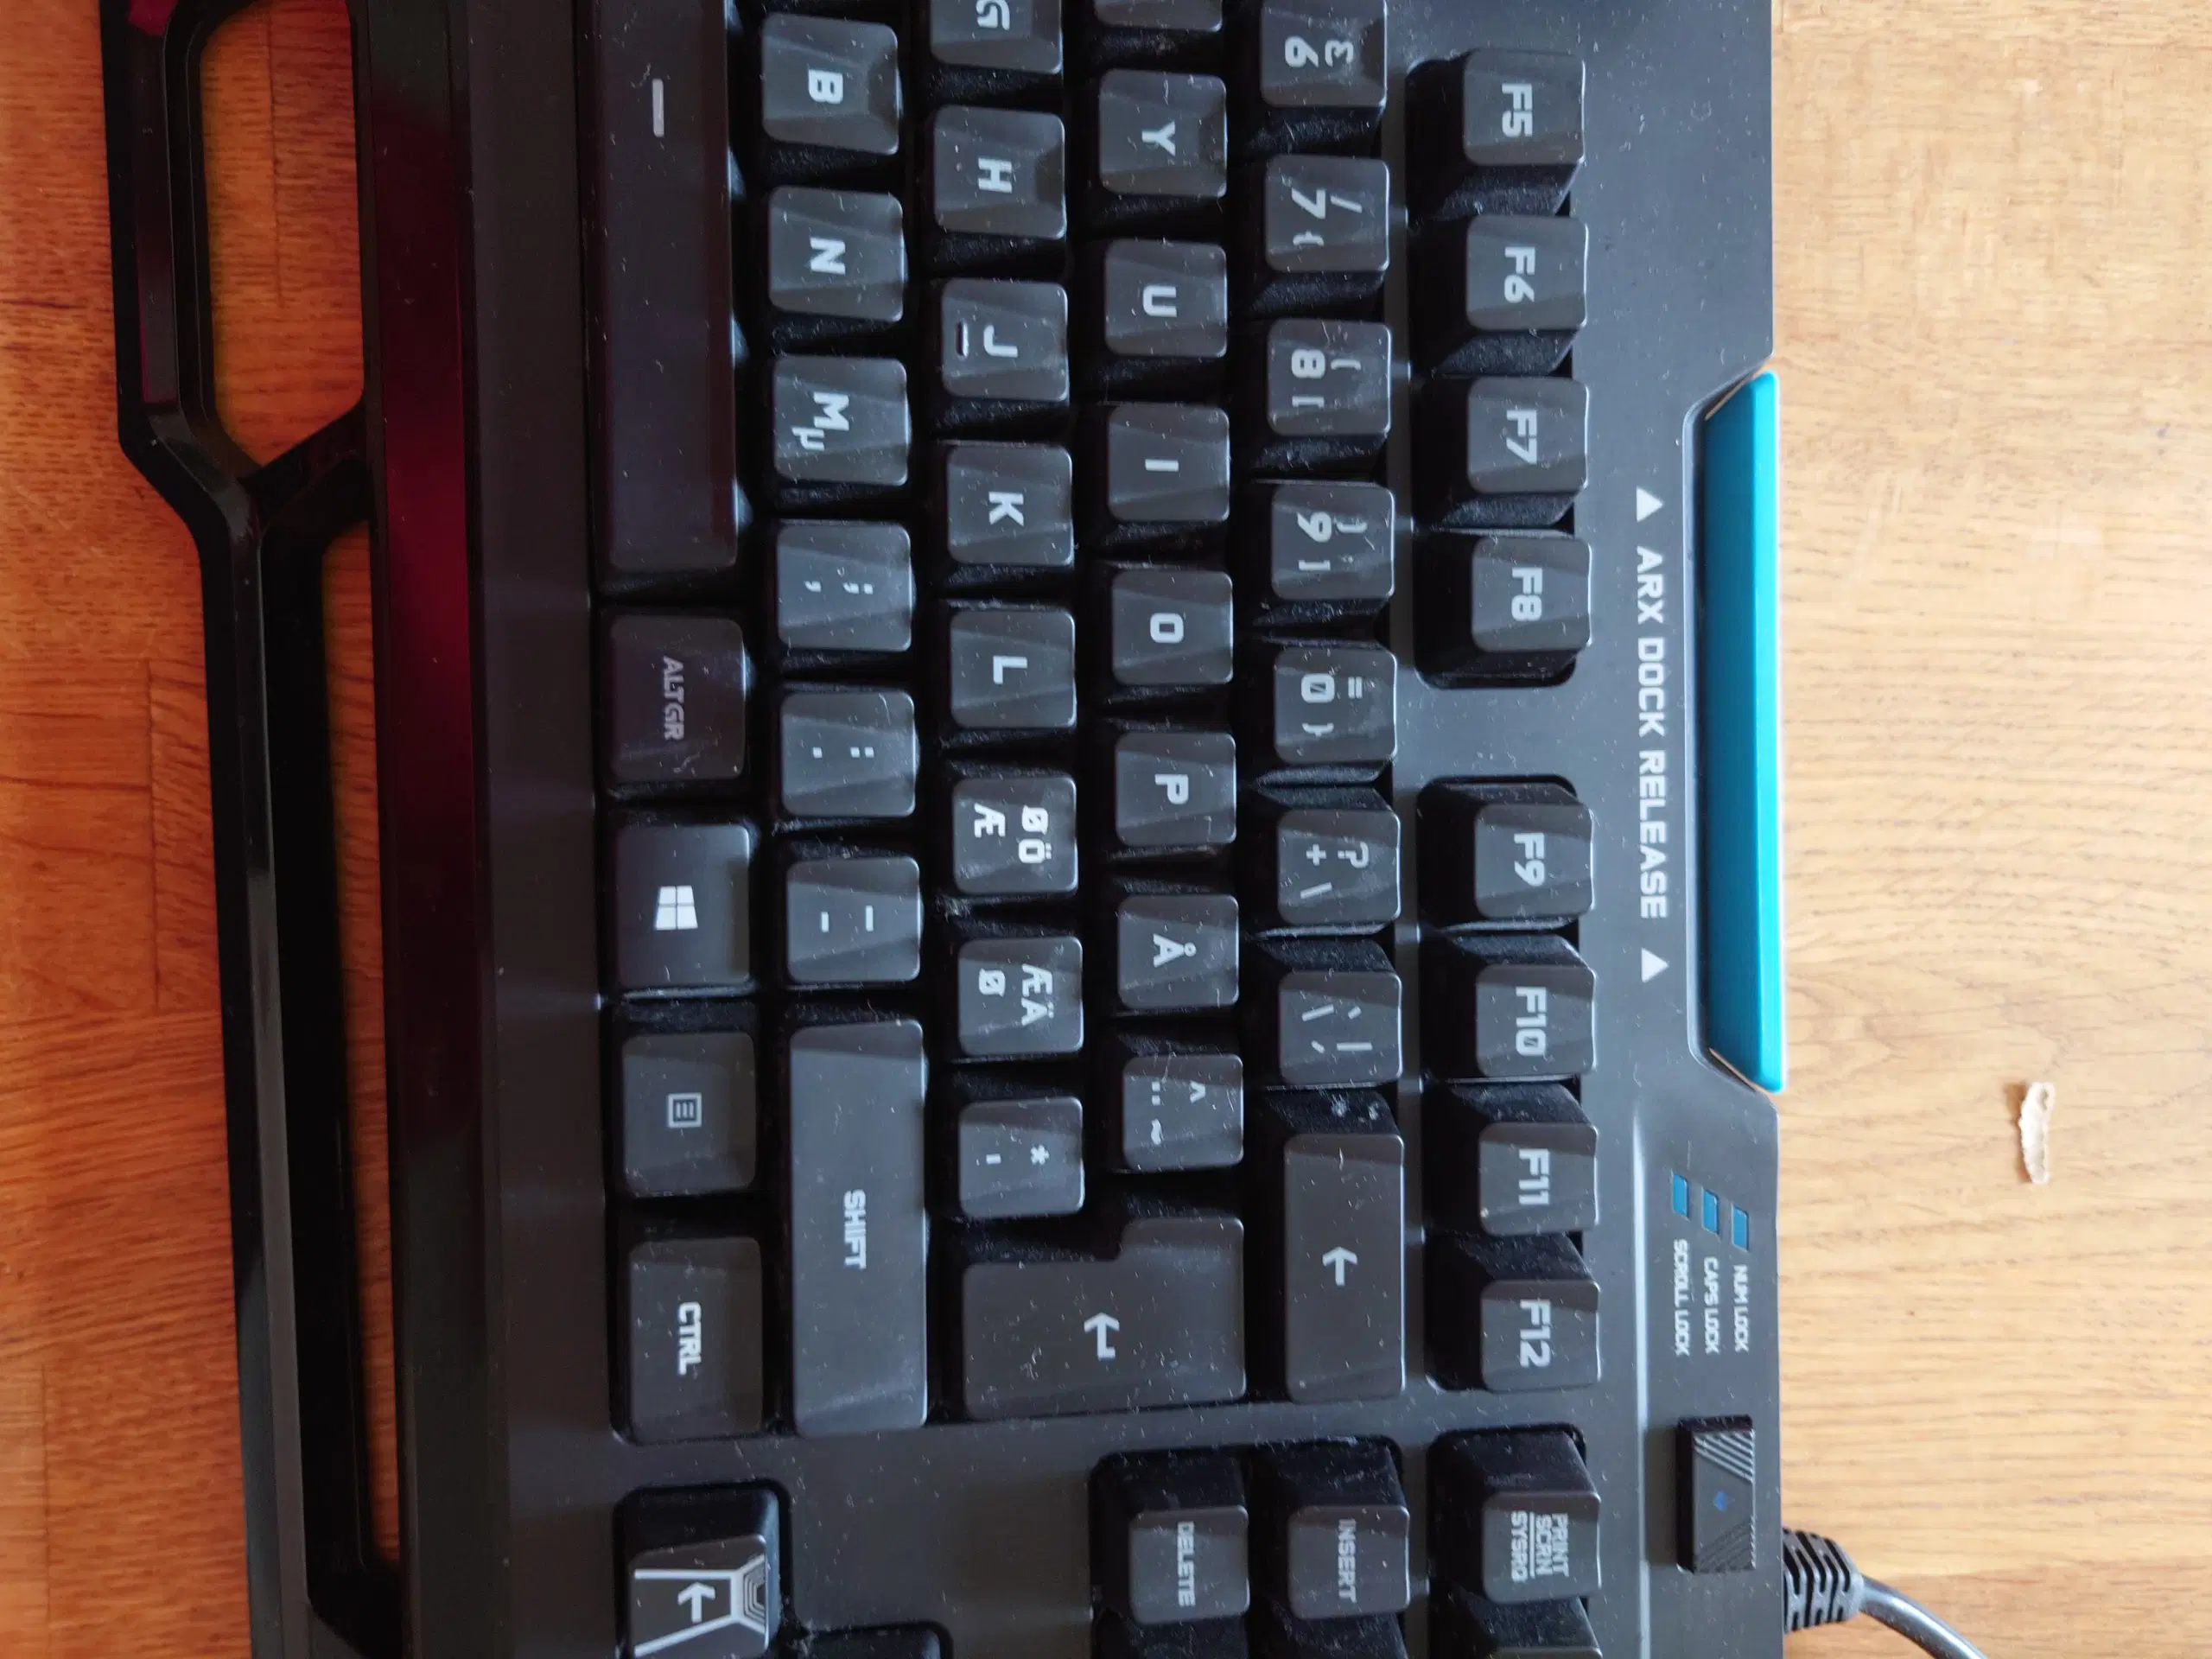 Logitech G910 Orion Spark gamer keyboard